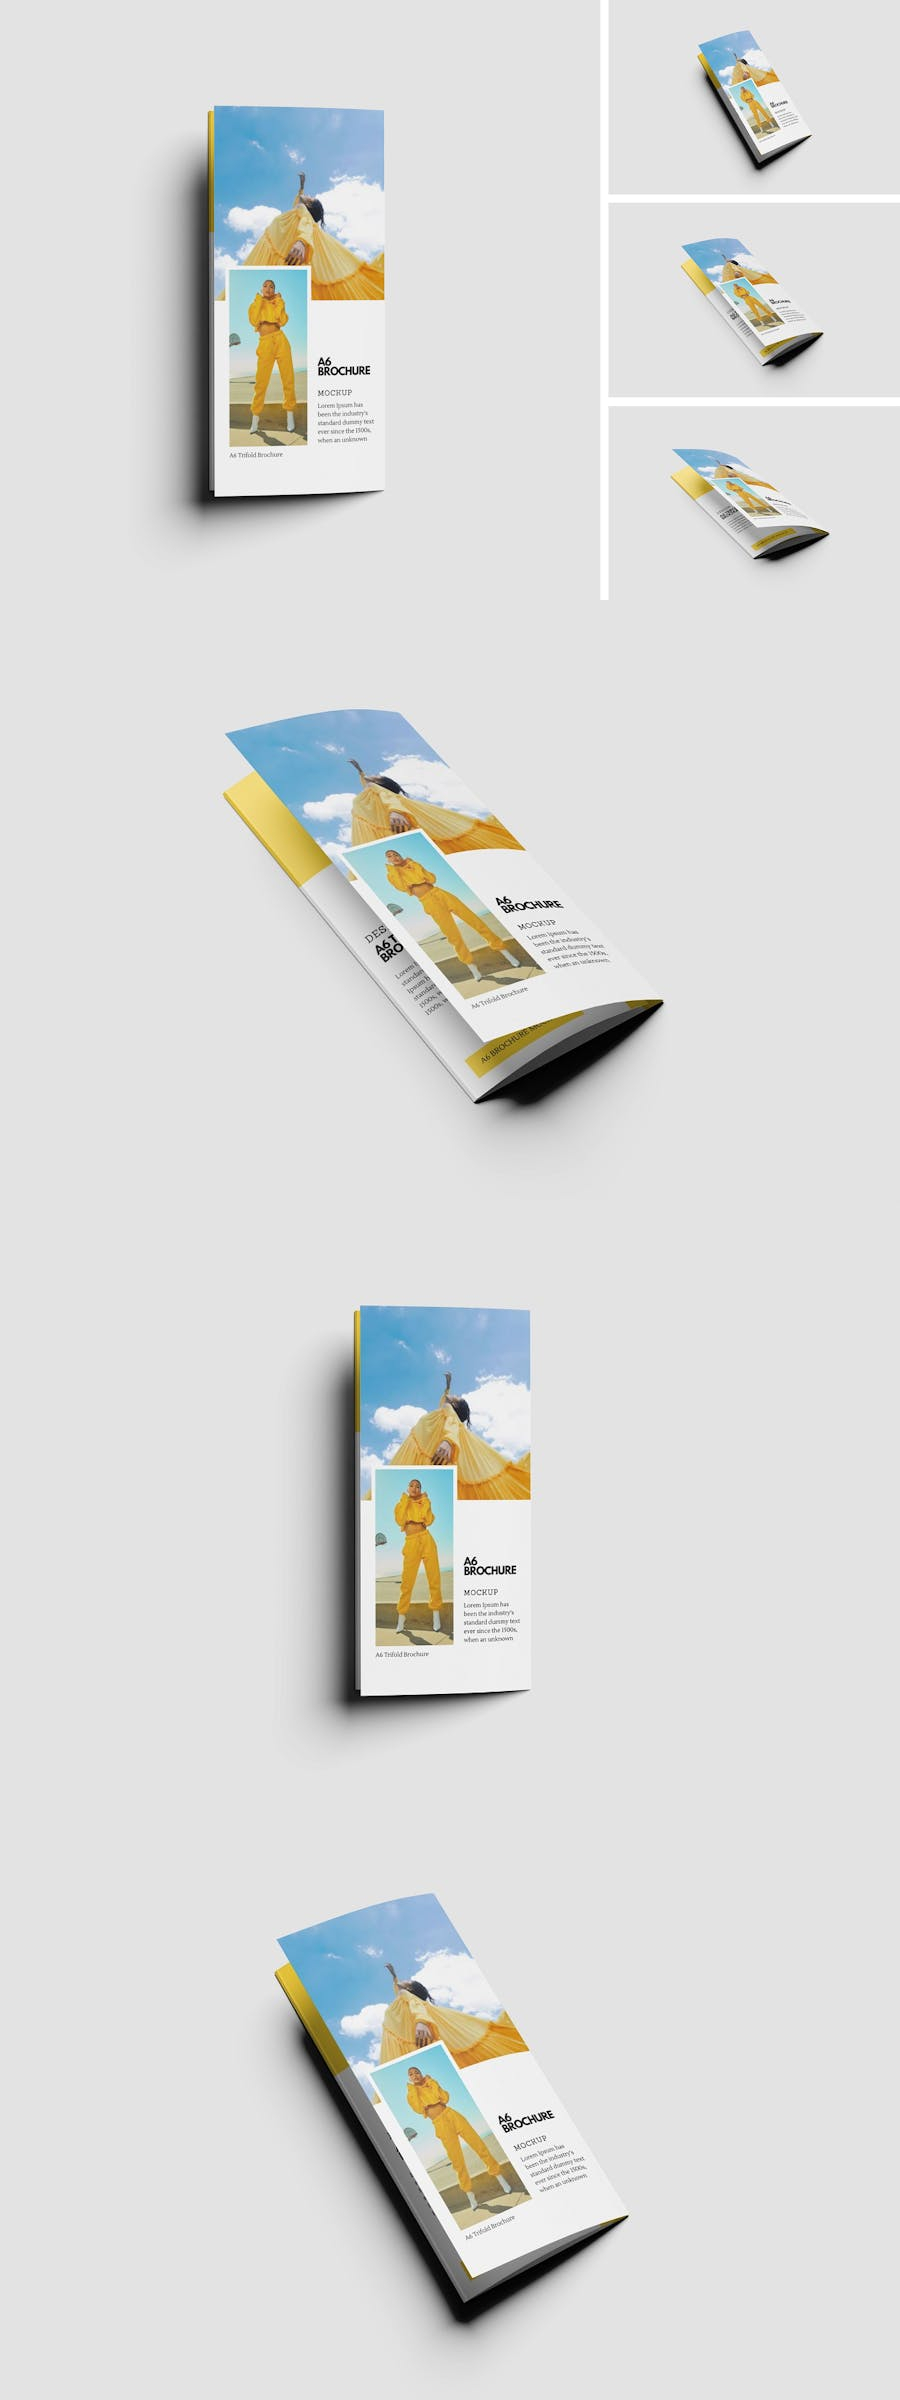 а6 trifold brochure mockup brochure design template mock-up Mockup mockups psd